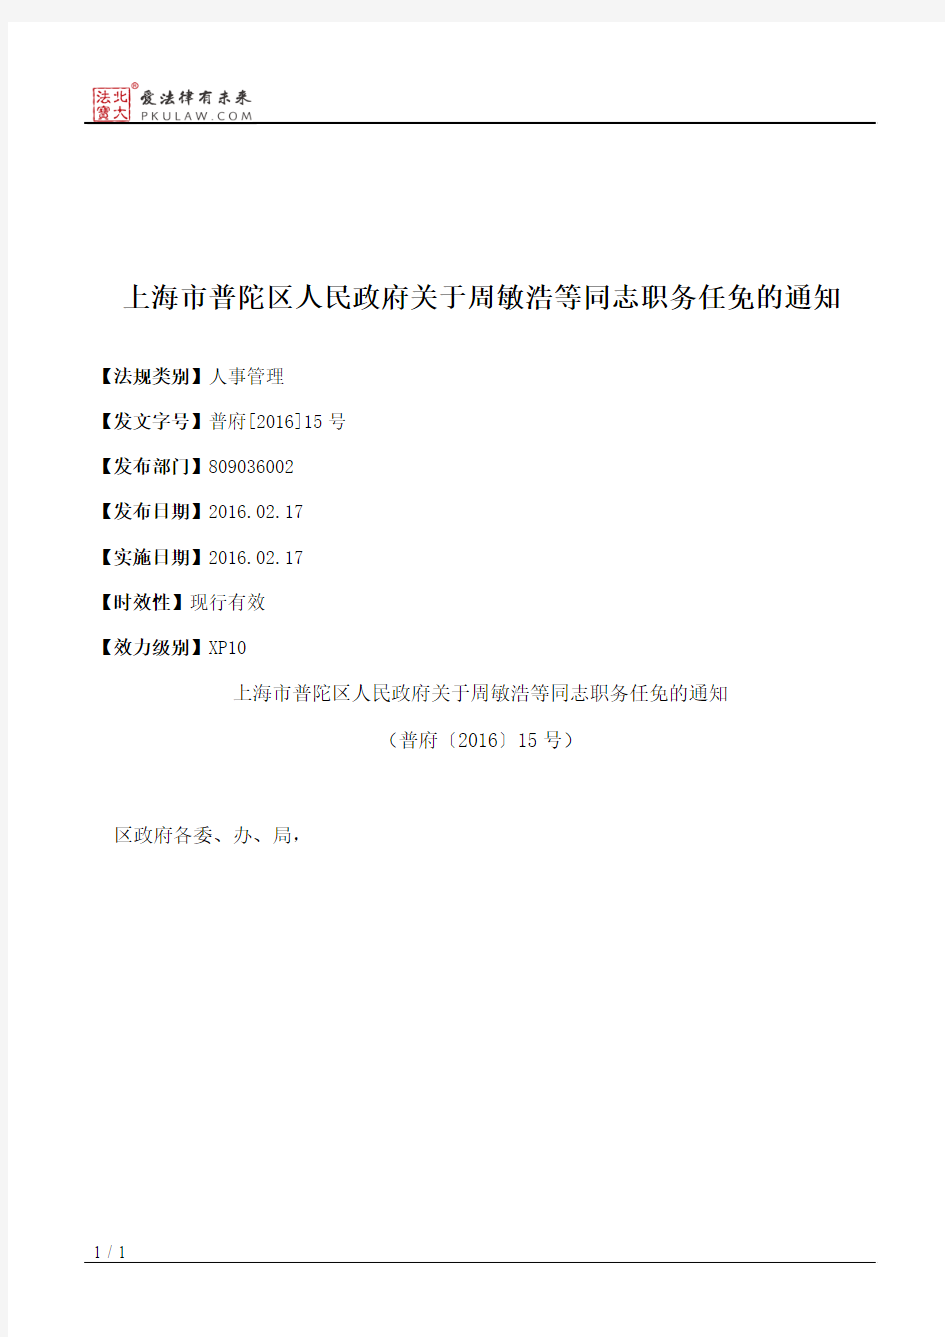 上海市普陀區人民政府關于周敏浩等同志職務任免的通知